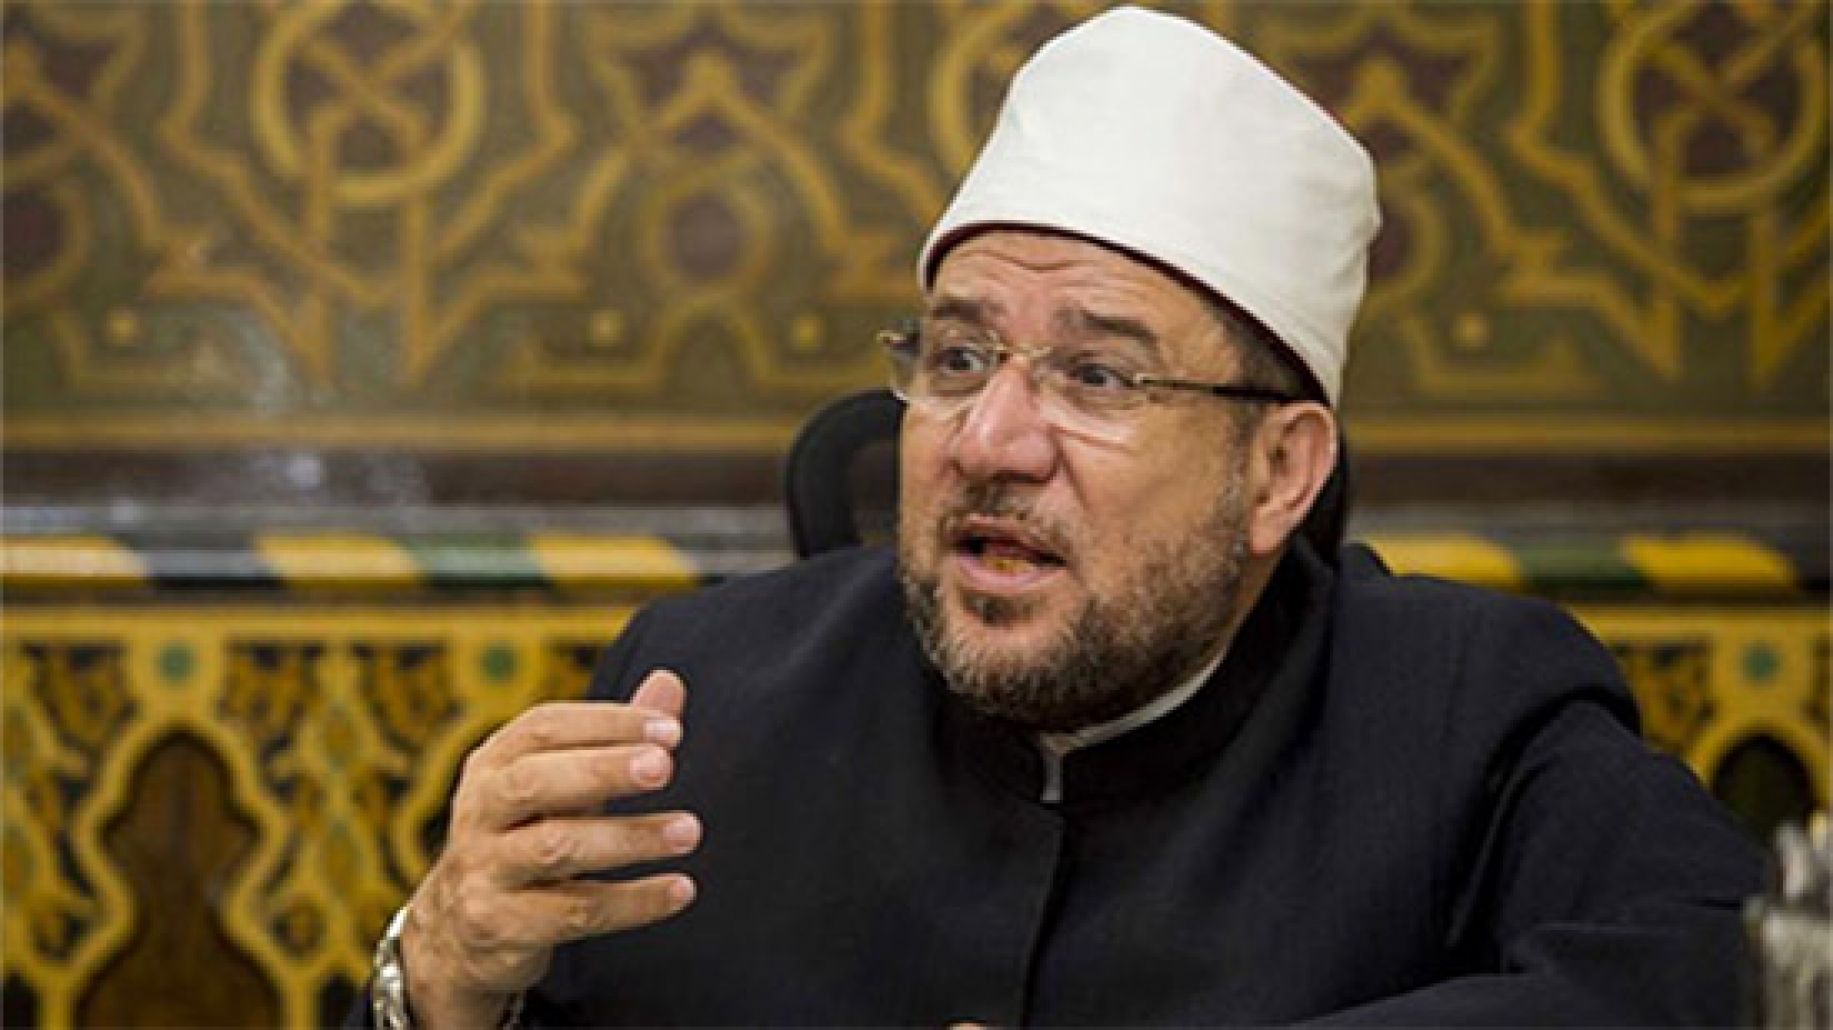 وزير الأوقاف يعلن موضوعات خطب الجمعة خلال شهر فبراير بالمساجد